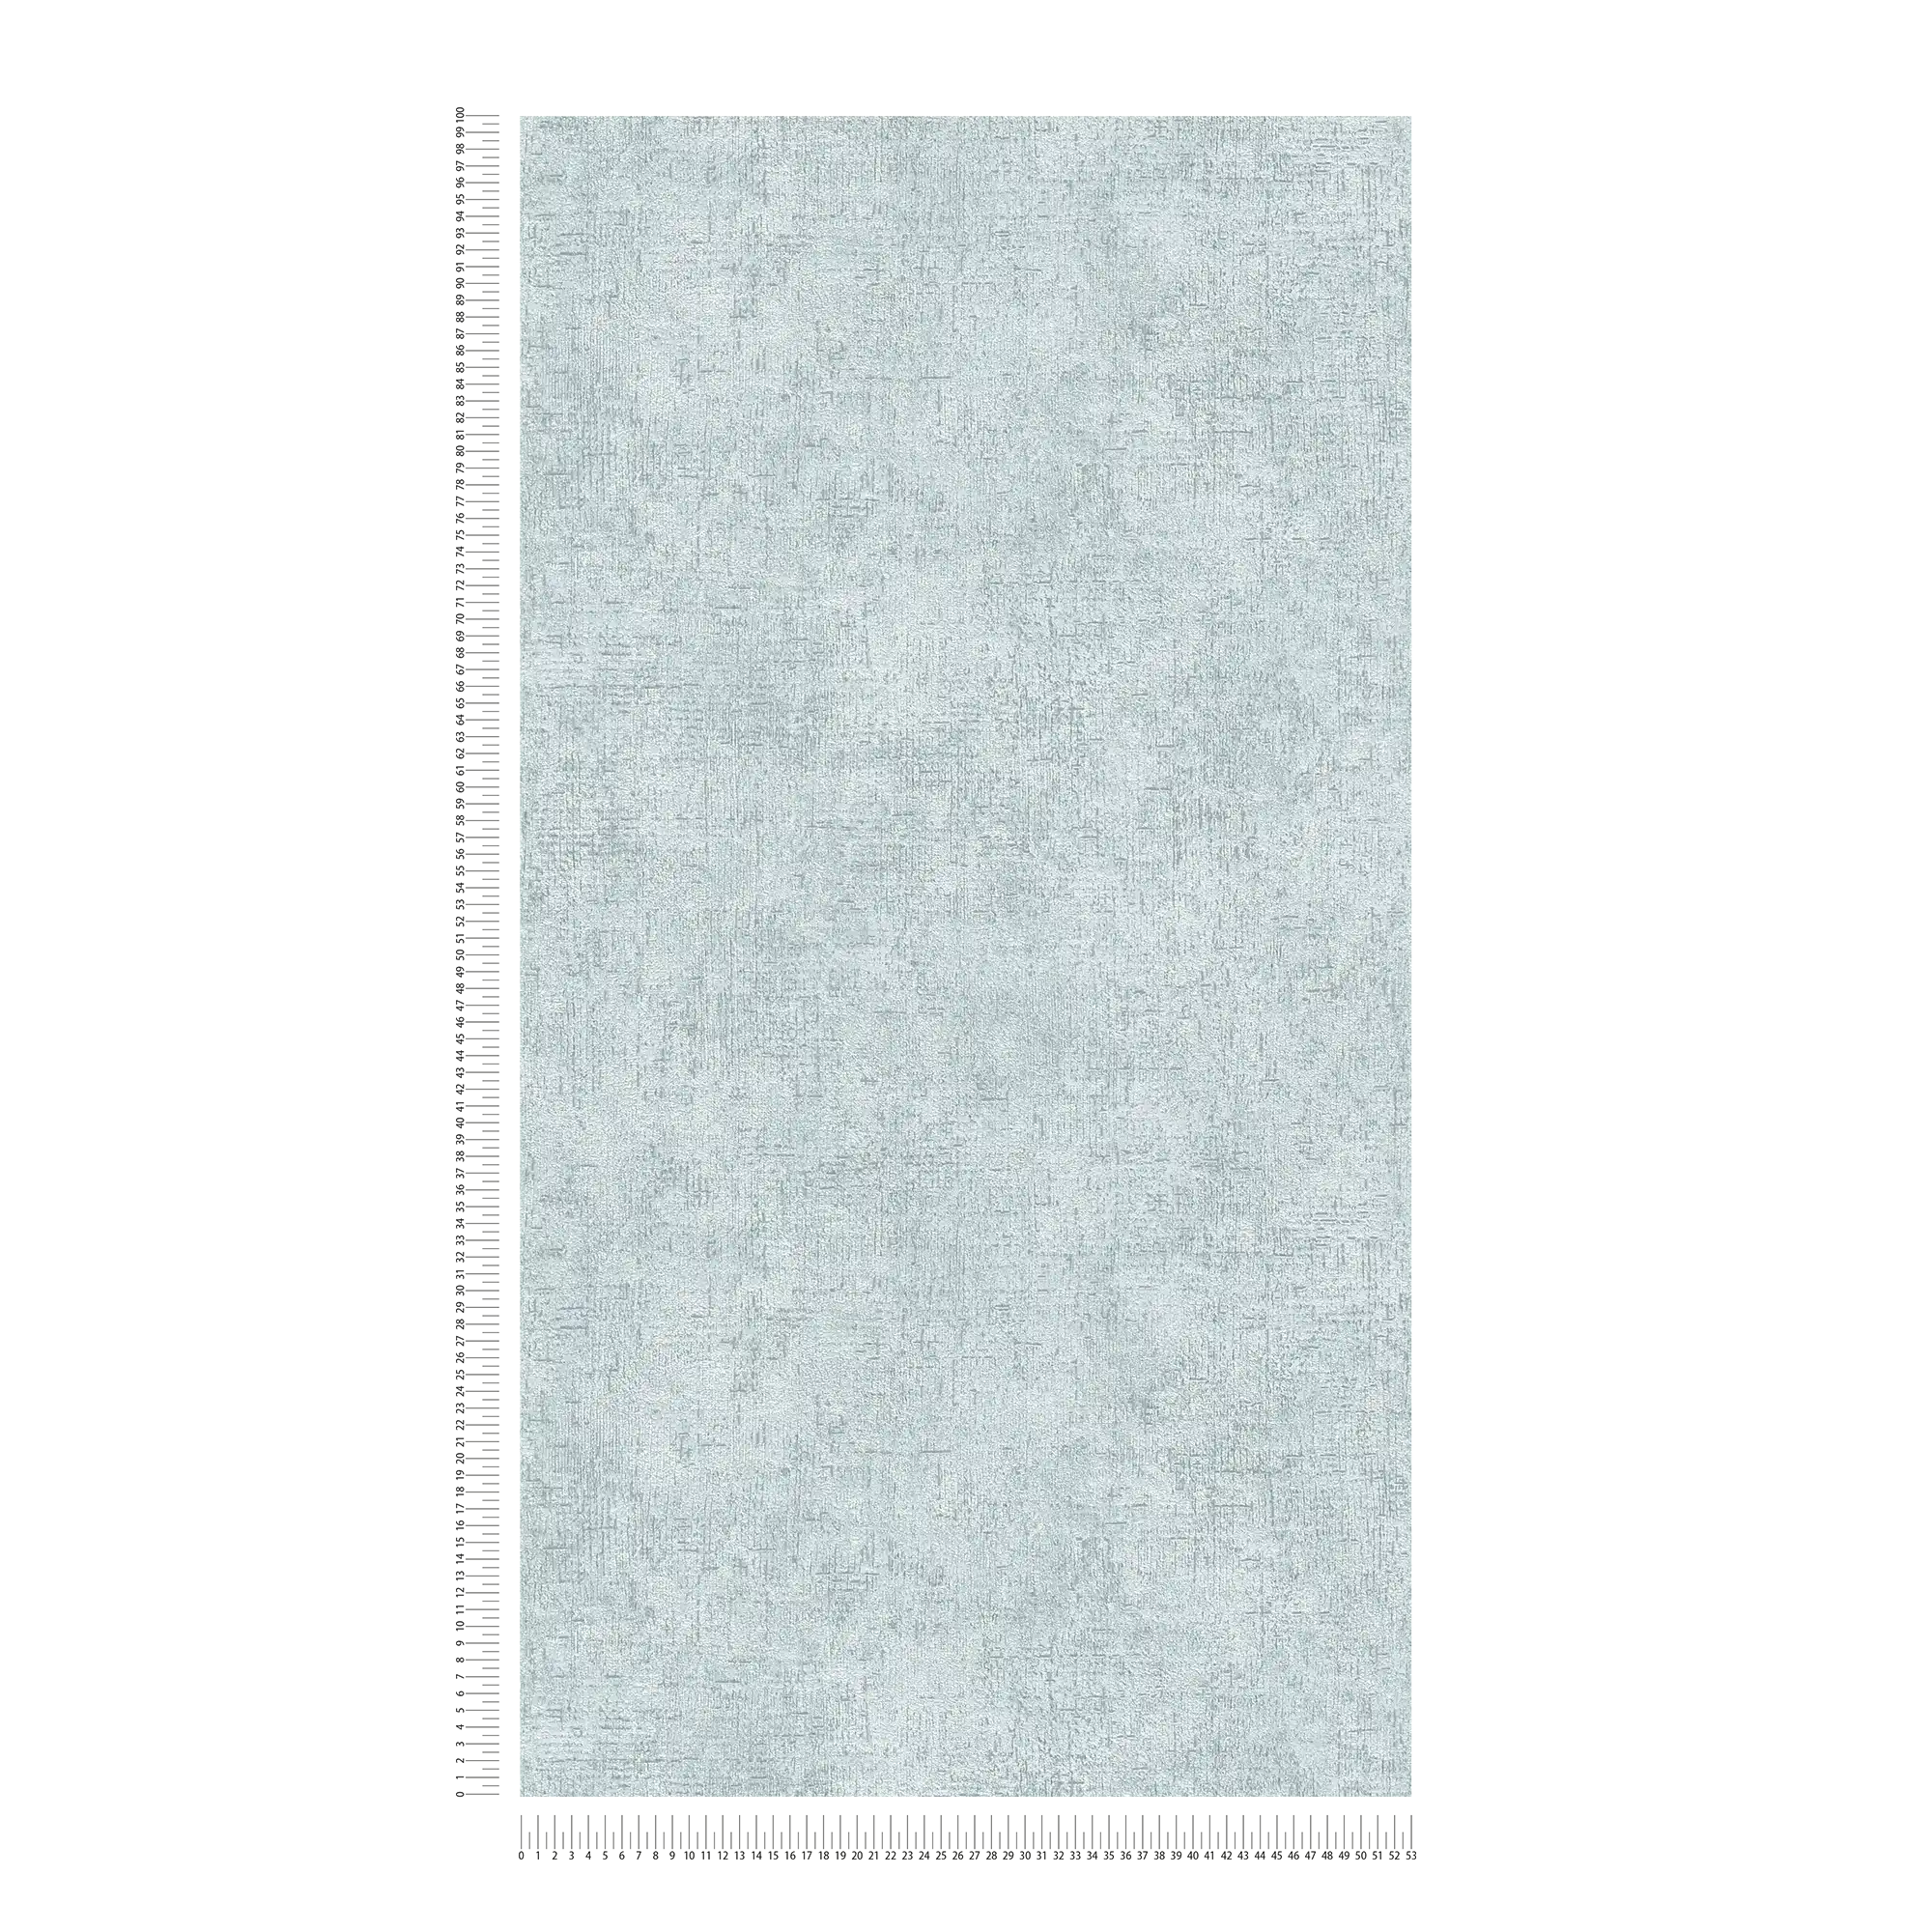             Carta da parati in tessuto non tessuto struttura rustica in gesso - verde, beige
        